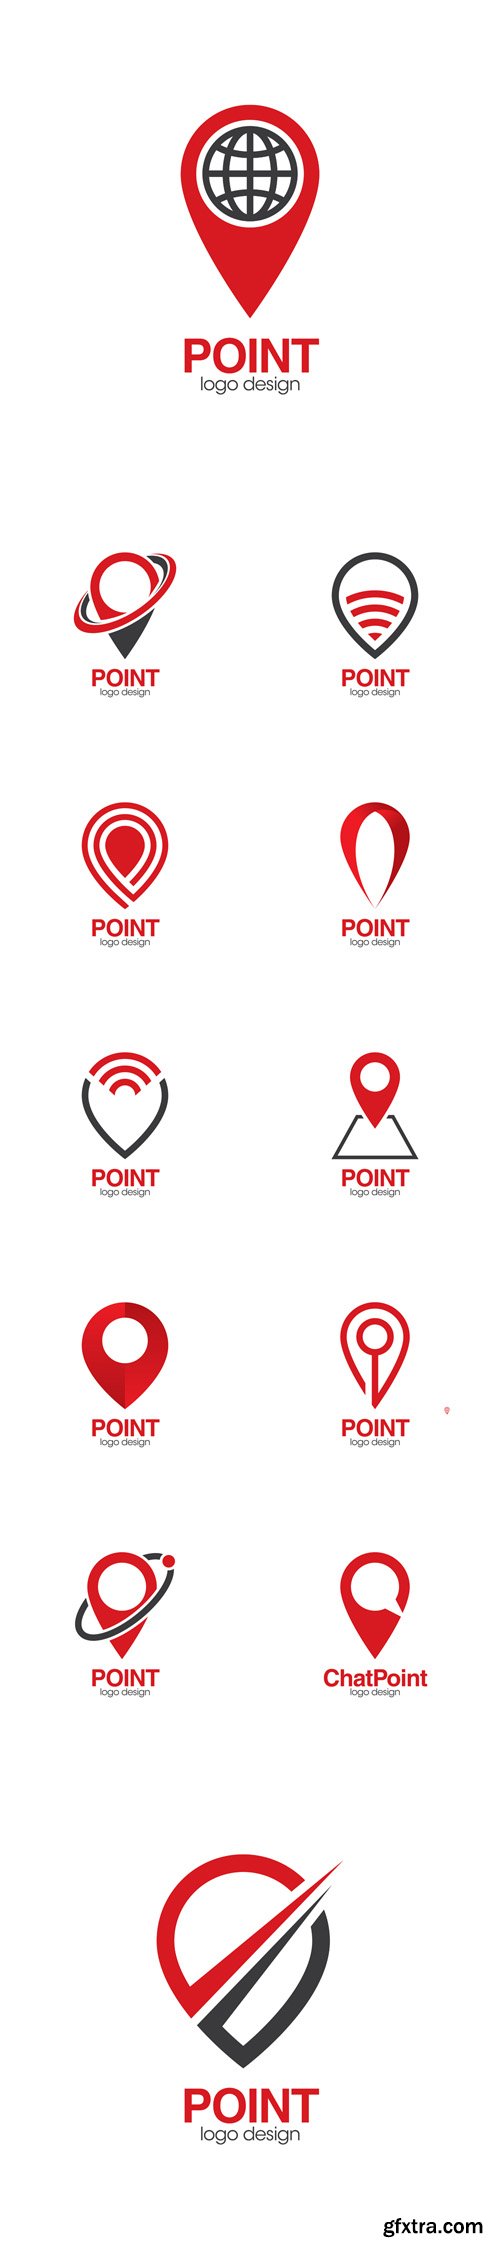 Vector Set - Point Creative Concept Logo Design Template